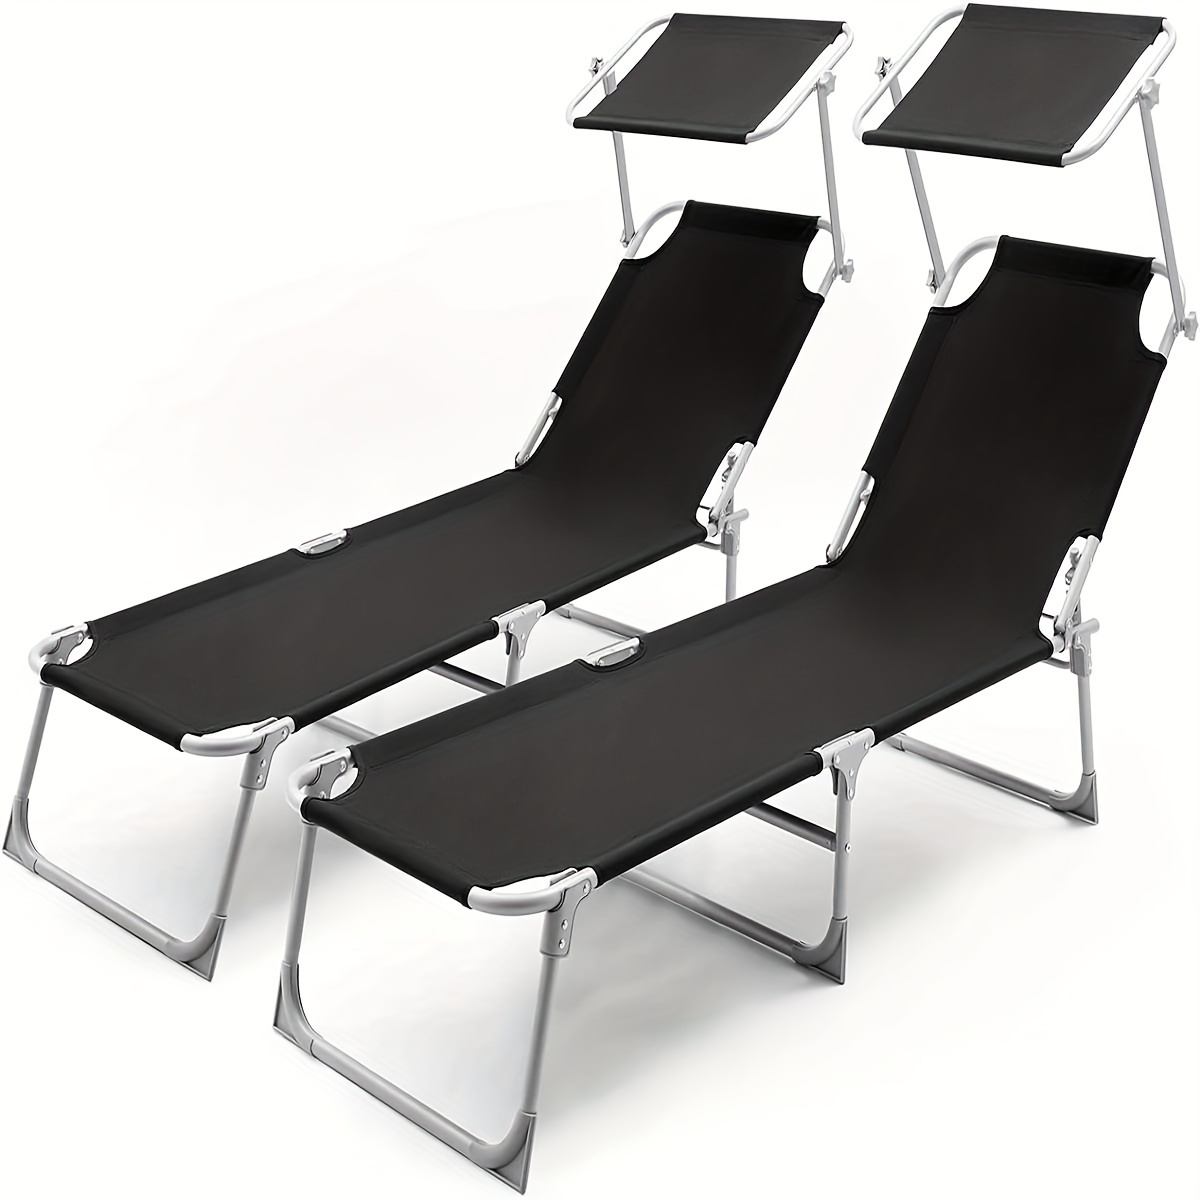 

Chaise longue pliante avec toit, ensemble de 2 chaises de plage portables, chaise longue de jardin, dossier réglable en 3 positions, tissu Oxford 600D, 193 x 53 x 30 cm, noir